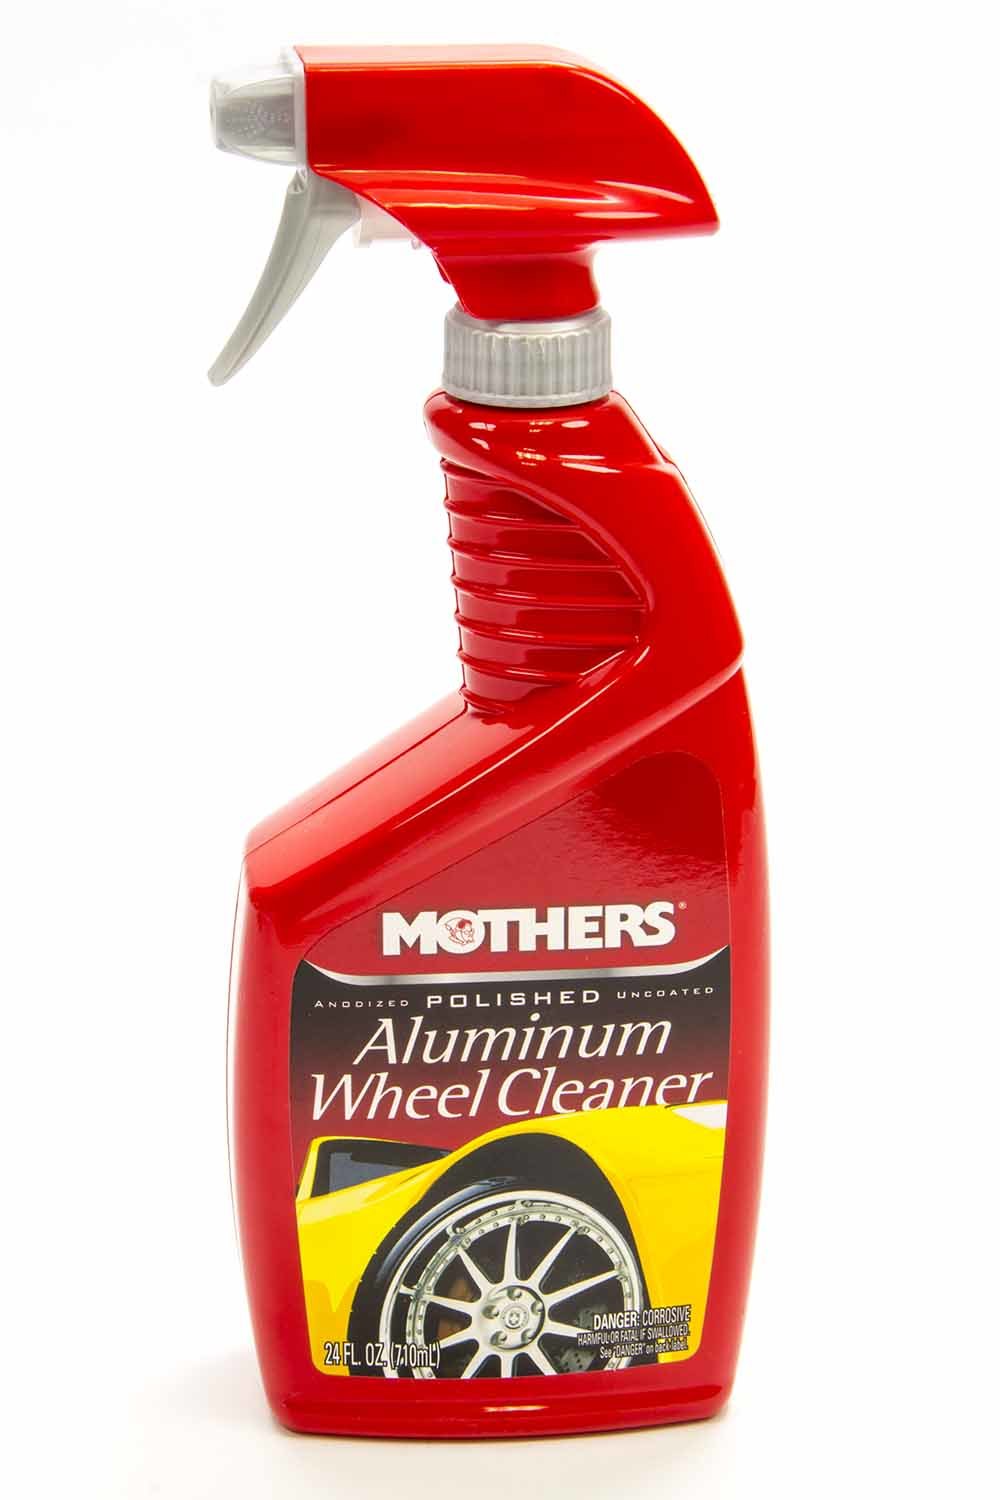 MOTHERS Wheel Cleaner, Aluminum Wheel Cleaner, 24 oz Spray Bottle, Each